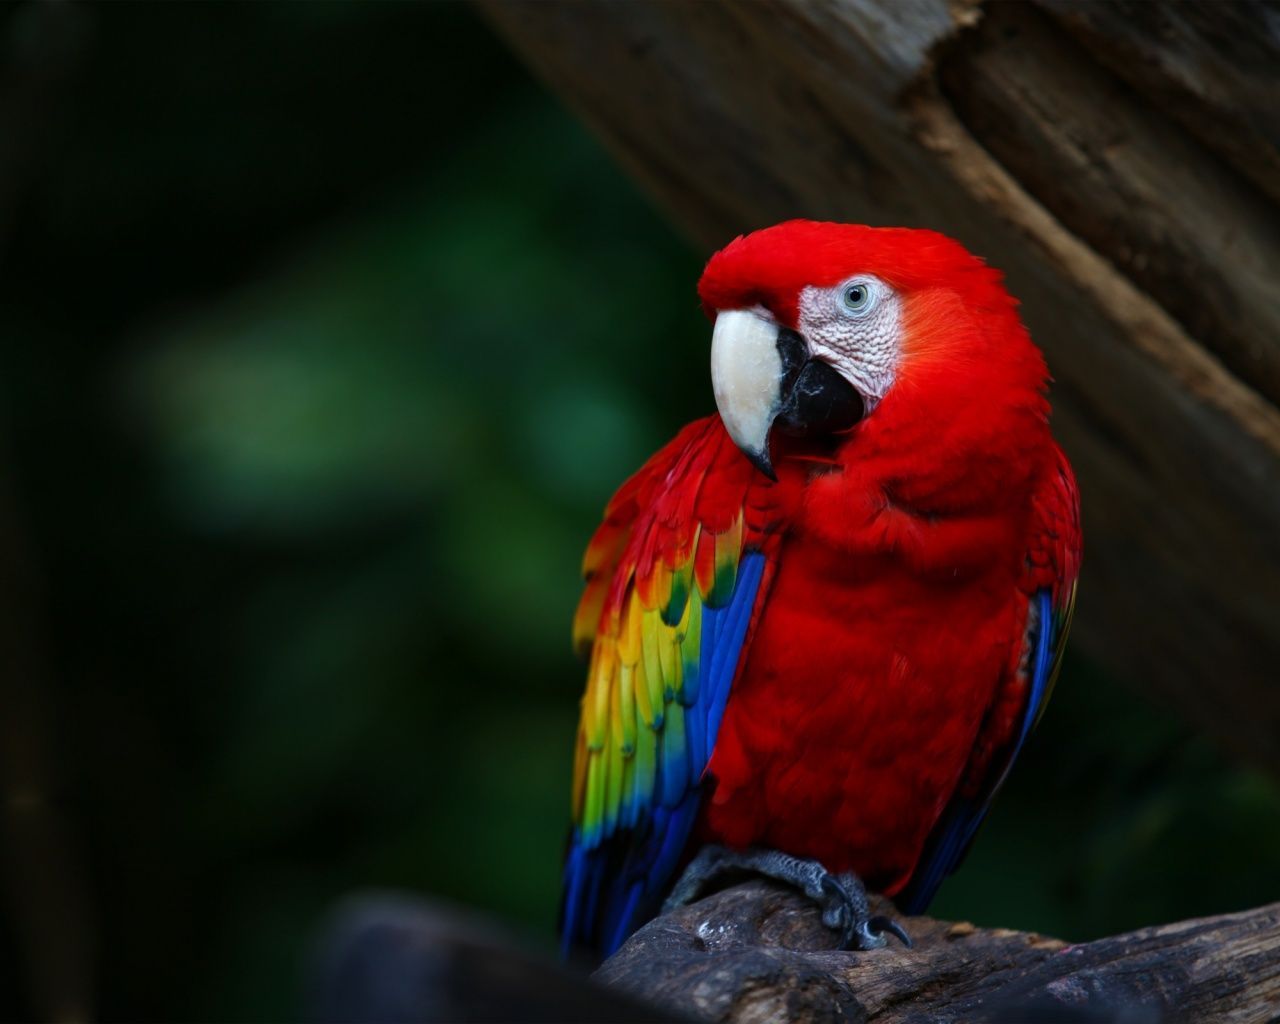 Colorful Parrot in Animals.com. Parrot wallpaper, Colorful parrots, Parrot